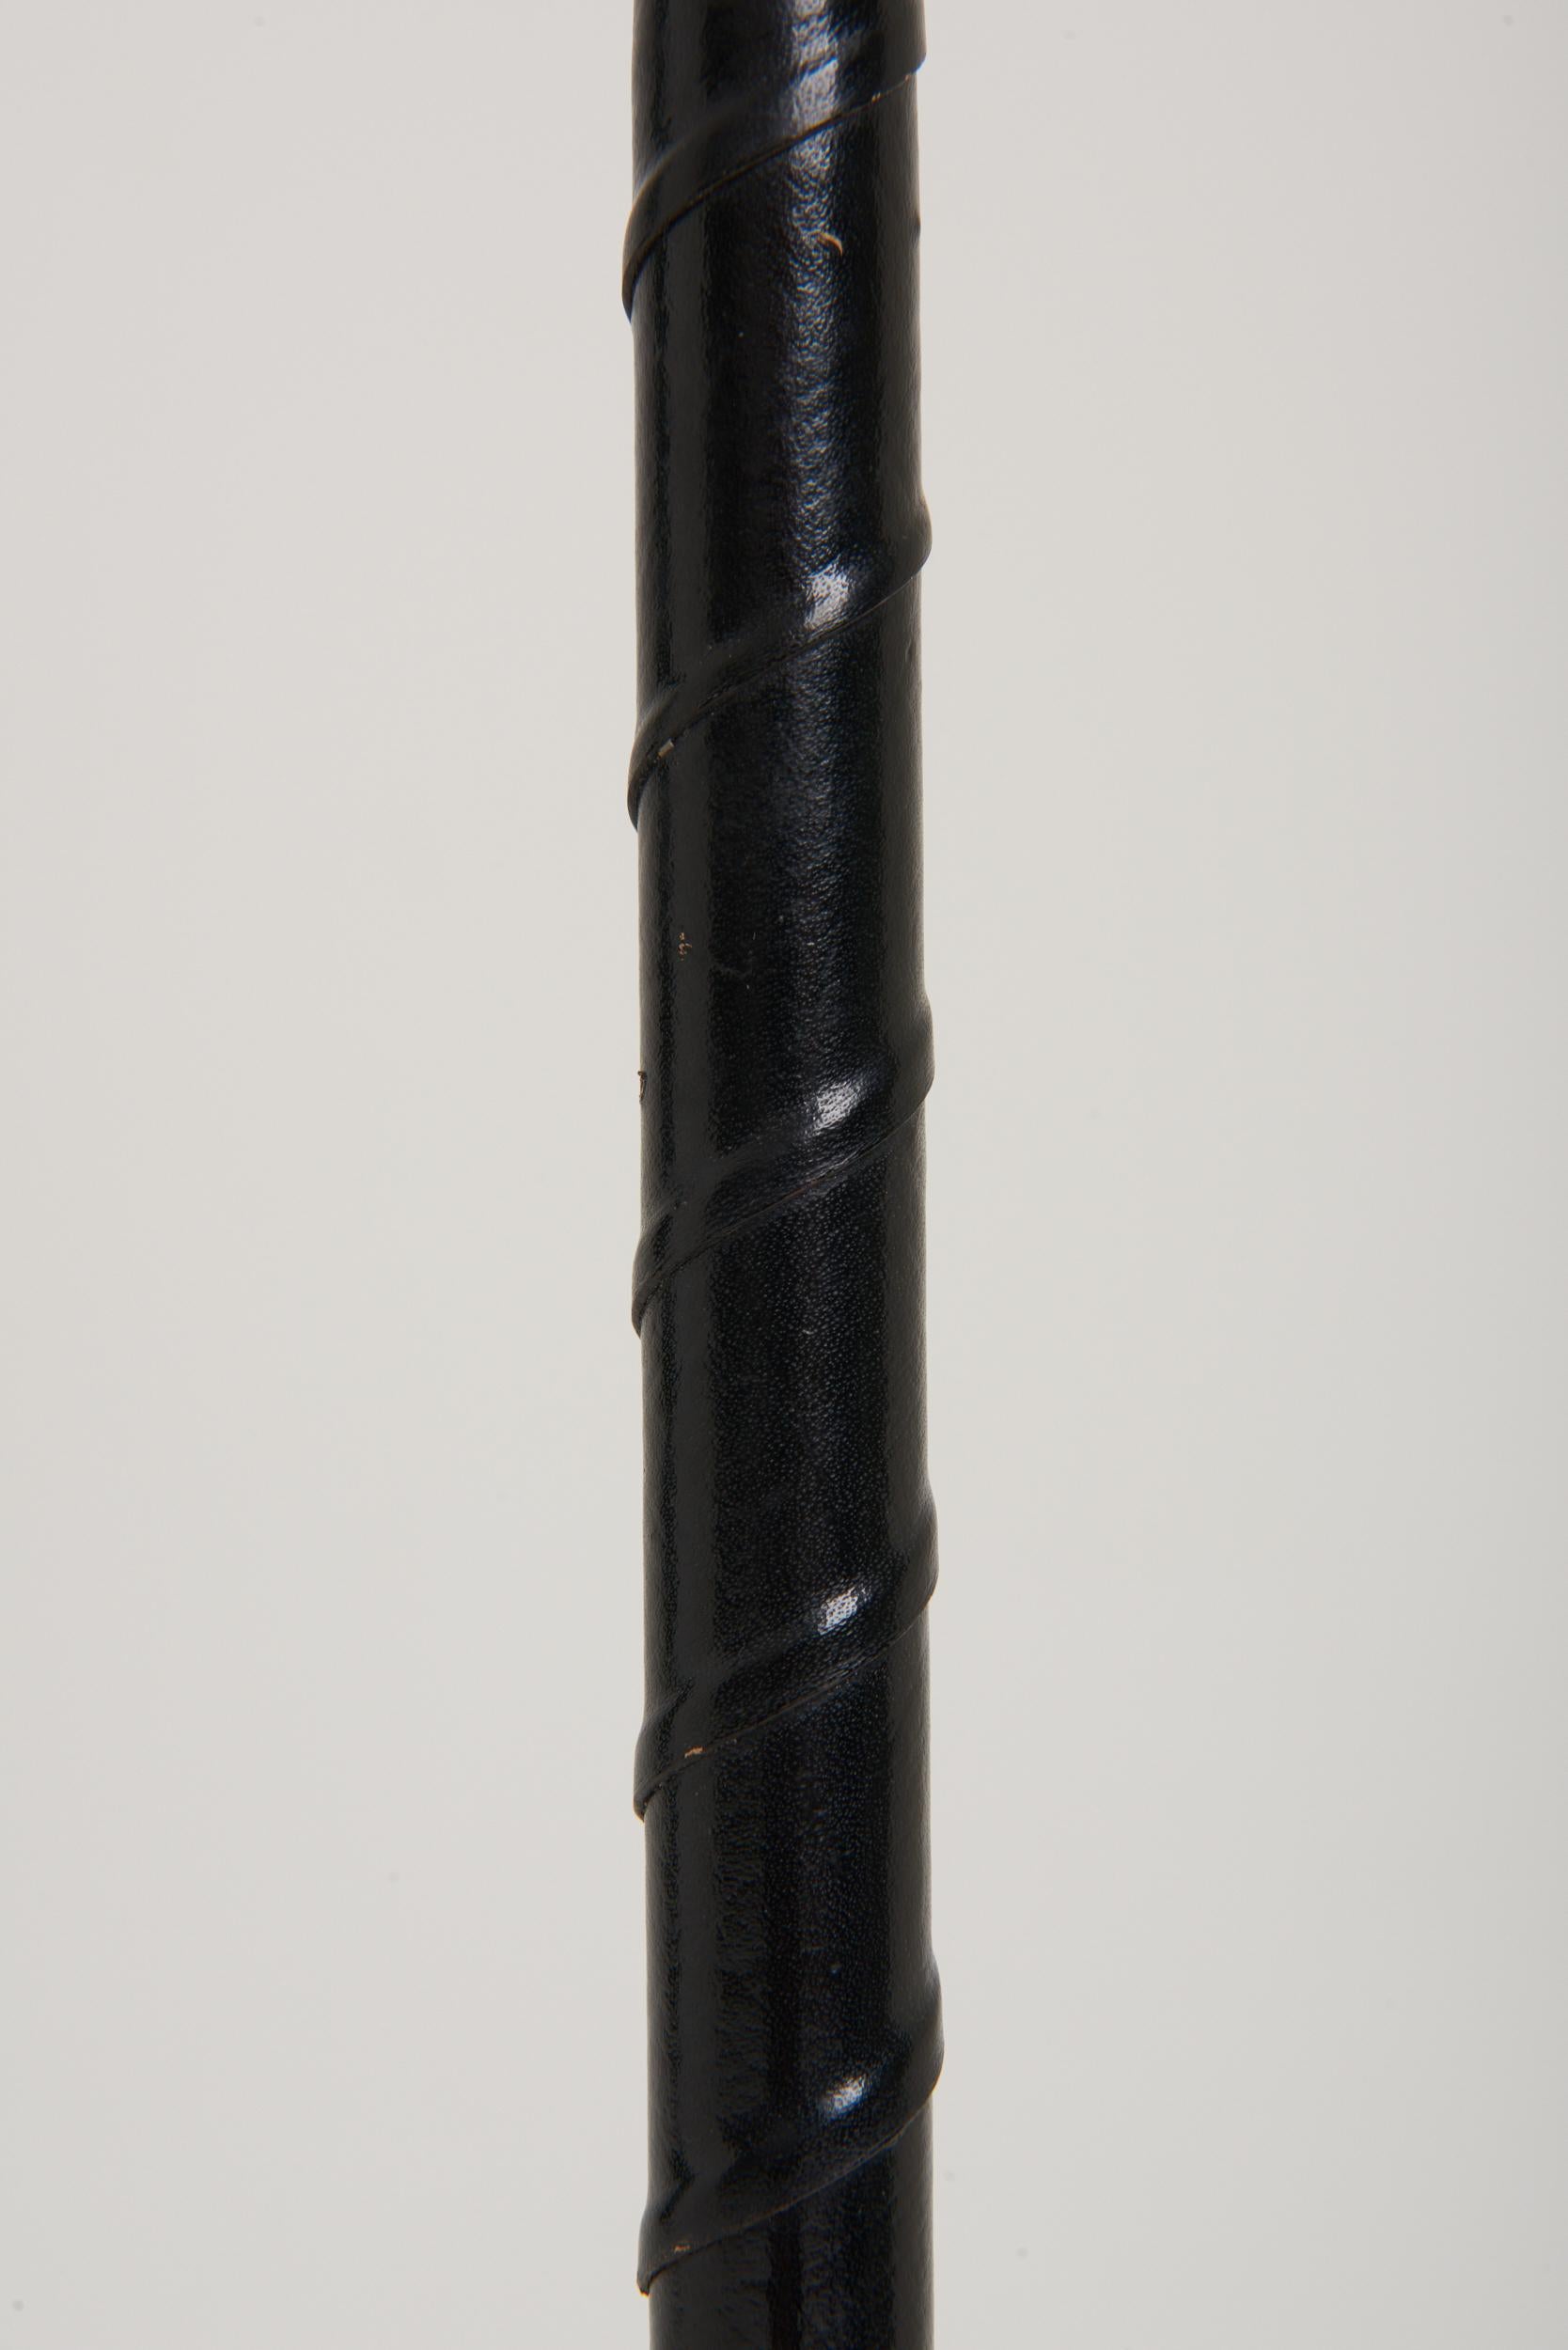 Lampadaire en cuir noir torsadé et nickel.
Suède, troisième quart du 20e siècle.
Dimensions : Avec l'abat-jour : 155 cm de haut par 45 cm de diamètre.
Base de la lampe uniquement : 130 cm de haut par 25 cm de diamètre.